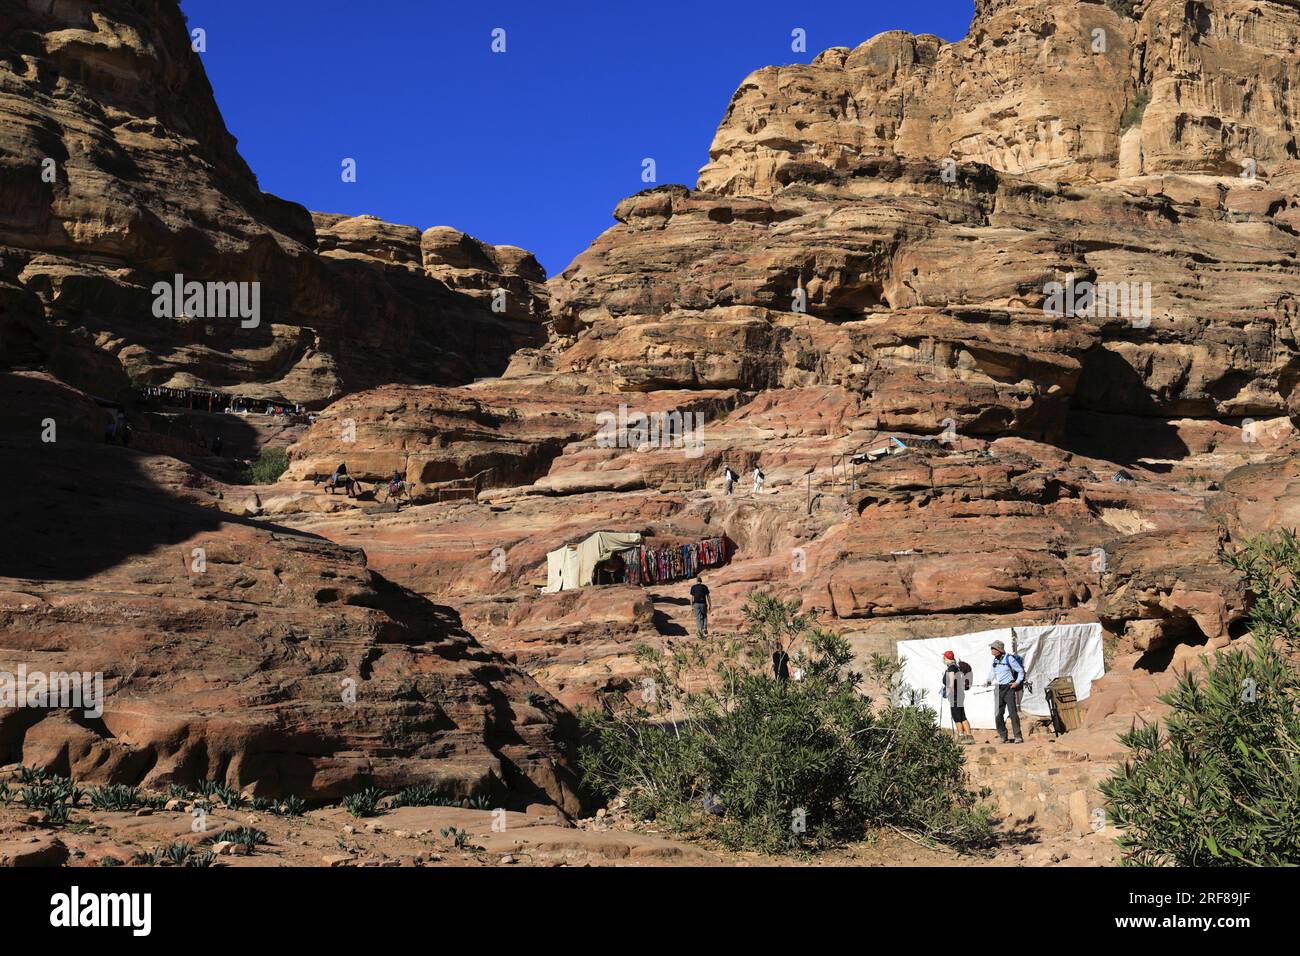 Les gens sur le sentier du monastère ad Deir jusqu'à la ville de Petra, site du patrimoine mondial de l'UNESCO, Wadi Musa, Jordanie, Moyen-Orient Banque D'Images